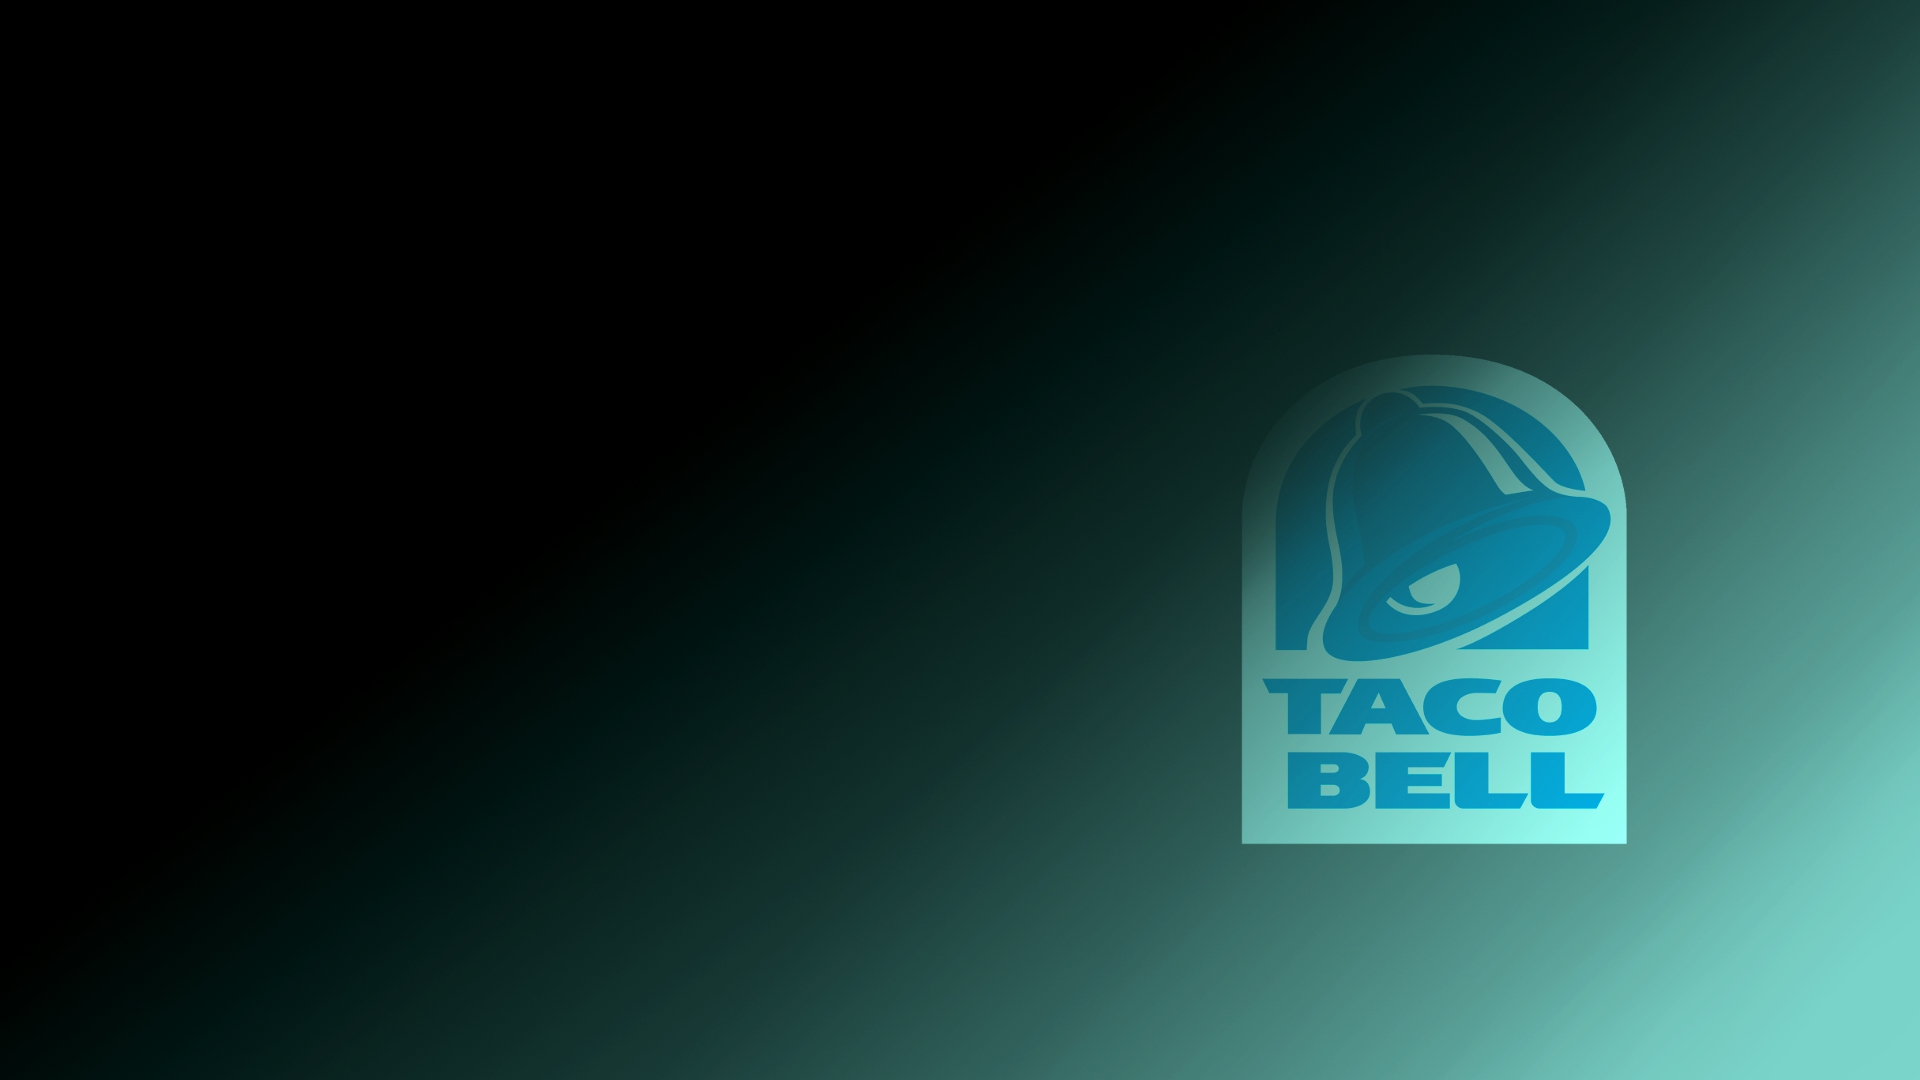 Taco bell wallpaper